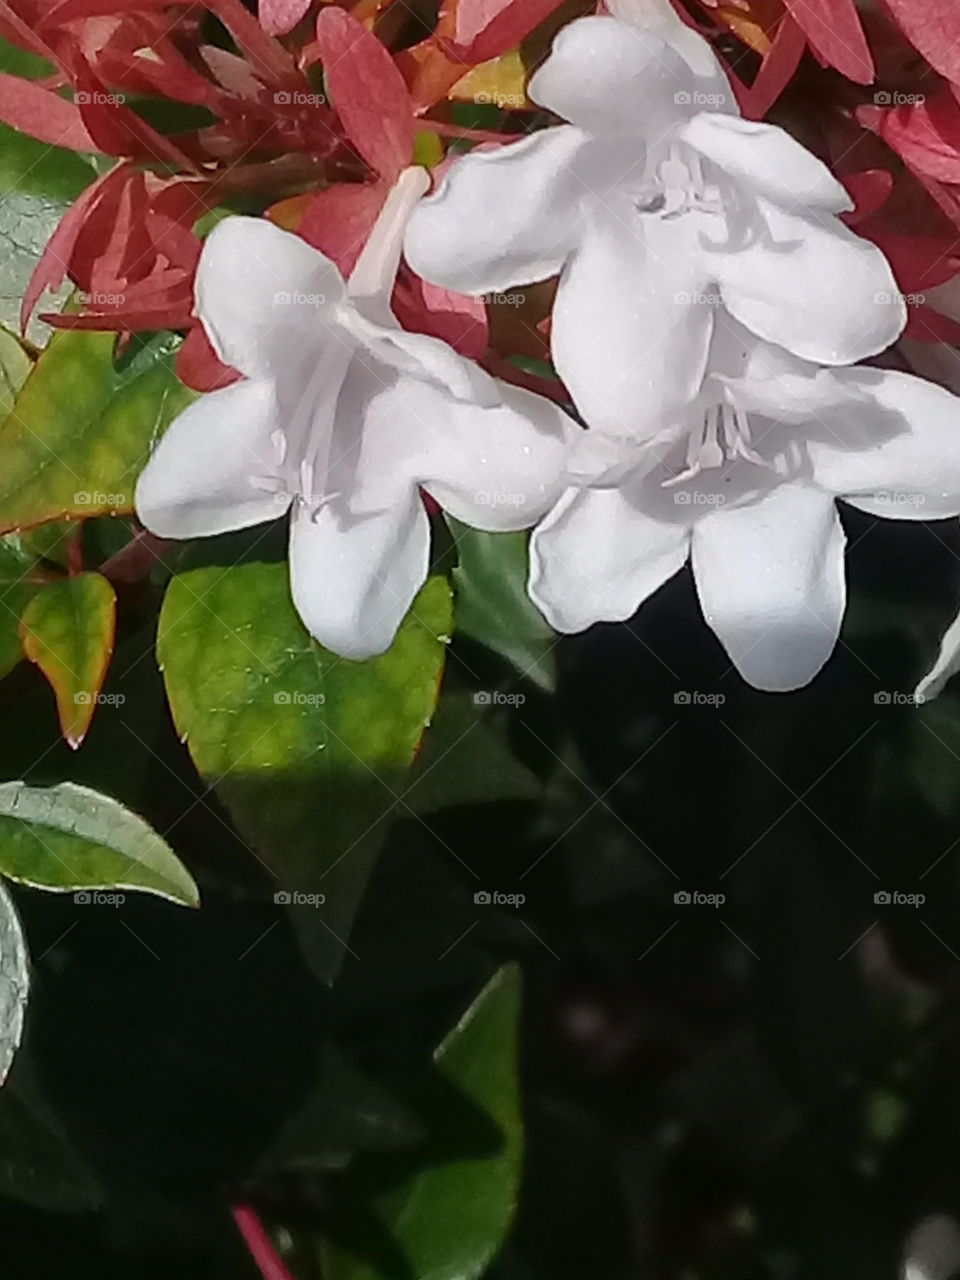 planta de jardín con flores blancas y muy perfumadas contrastando con el verde y rojo del follaje espeso.